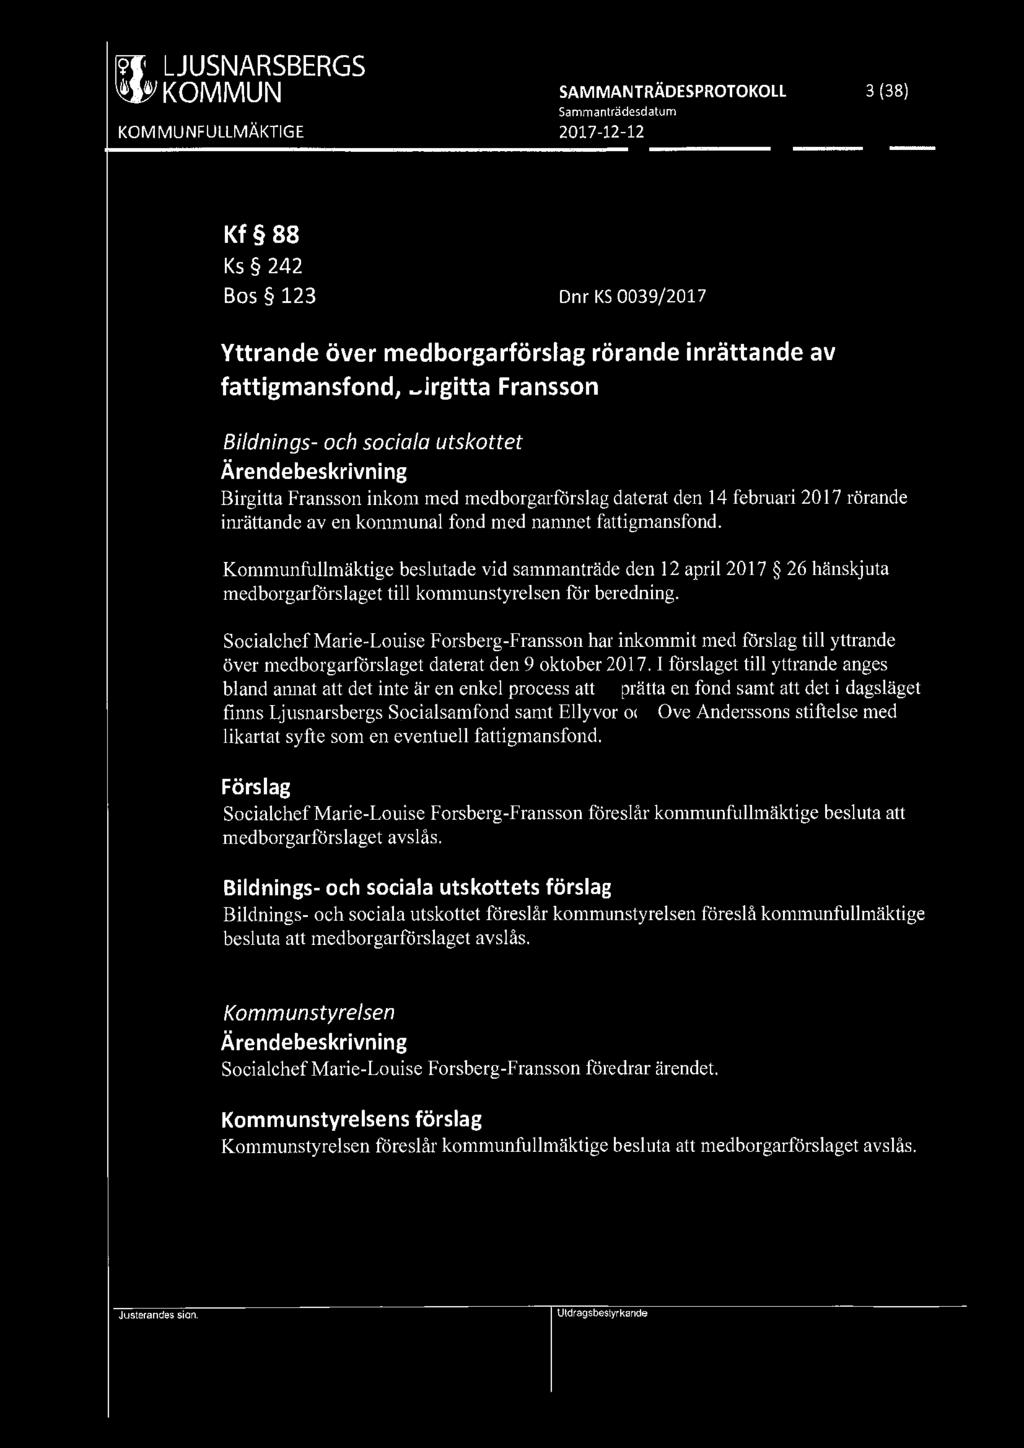 [919] LJUSNARSBERGS ' ' KOMMUN SAMMANTRÄDESPROTOKOLL 3 (38) Kf 88 Ks 242 Bos 123 Dnr KS 0039/2017 Yttrande över medborgarförslag rörande inrättande av fattigmansfond, Birgitta Fransson Bildnings- och